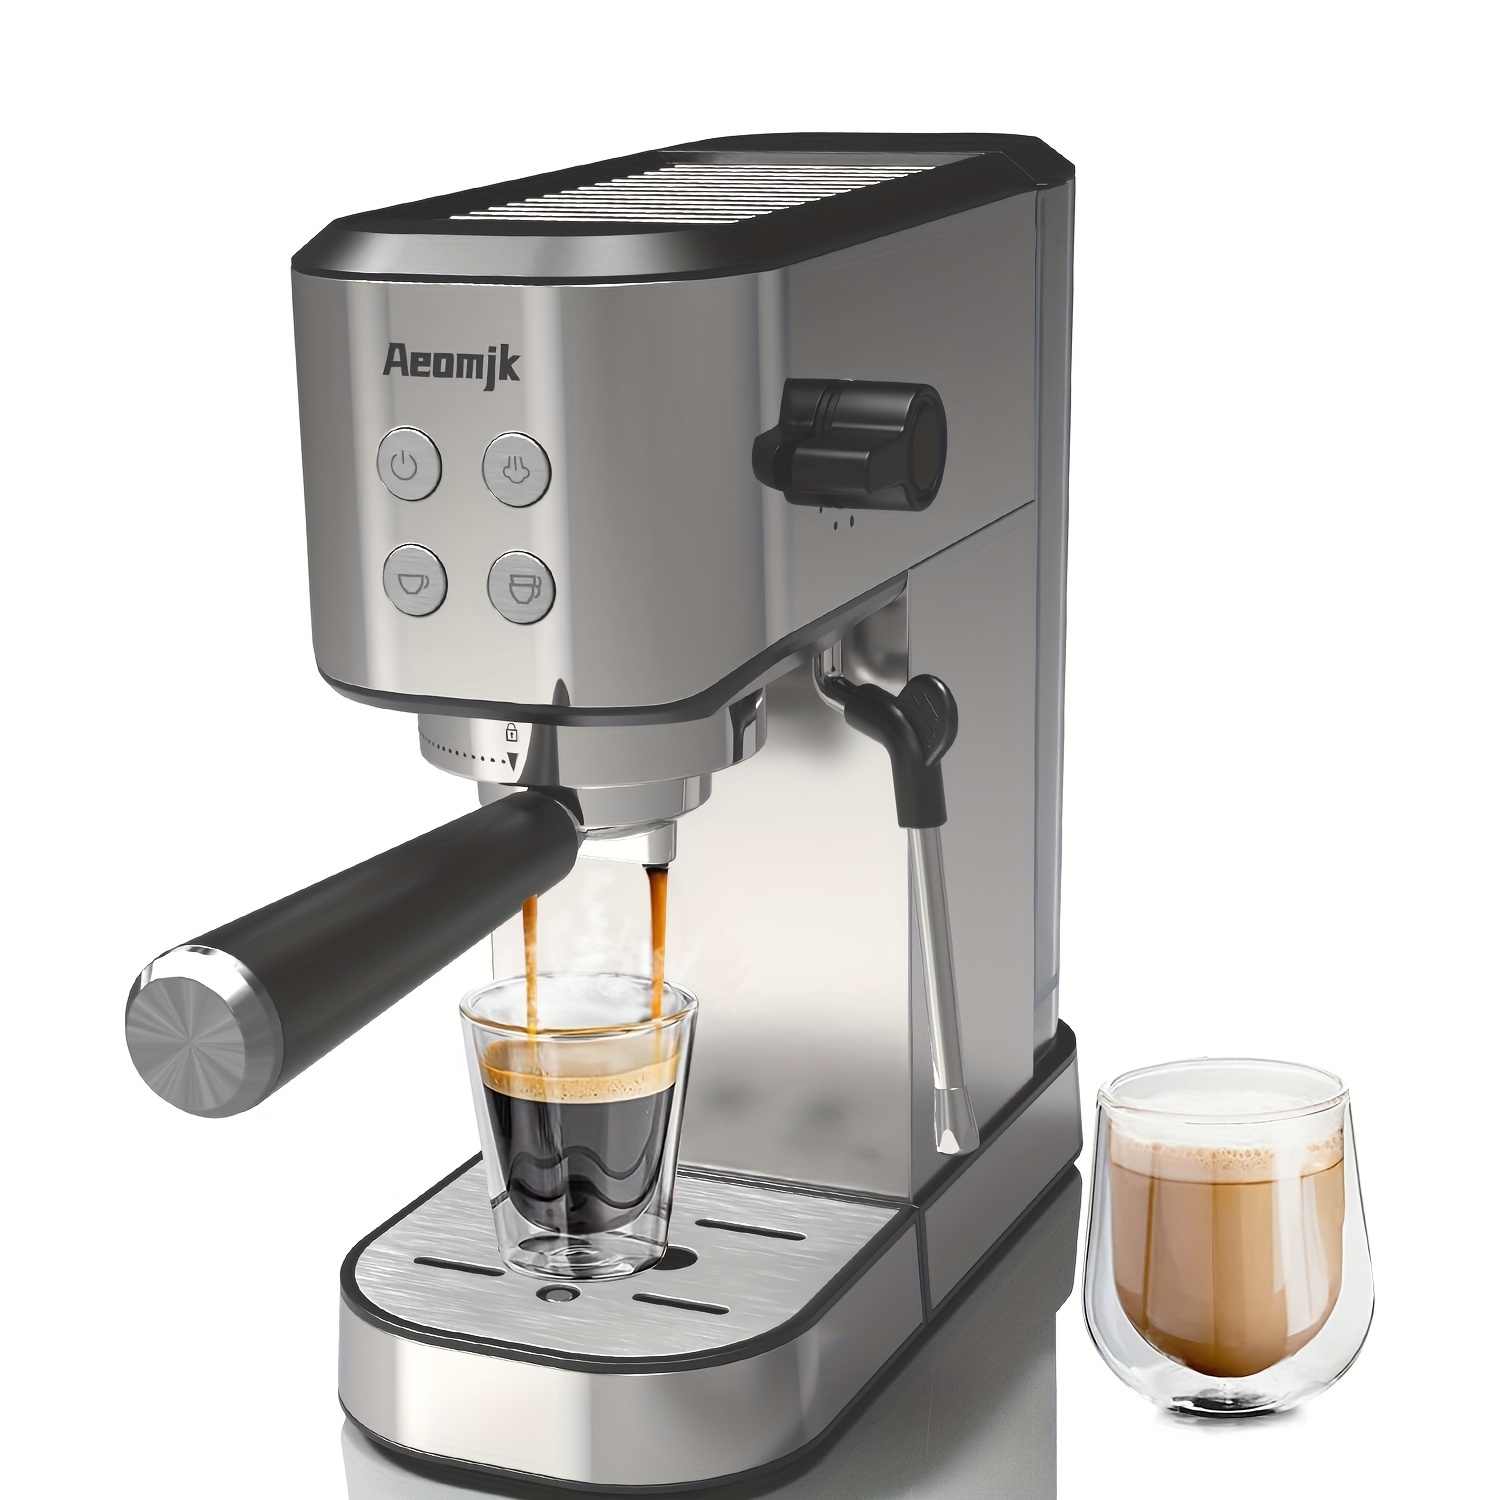 Gemilai Máquina De Café Espresso Semiautomática, Bomba Italiana Con Presión  De 15 Bares, 1100W, CRM3017, Regalo De Navidad